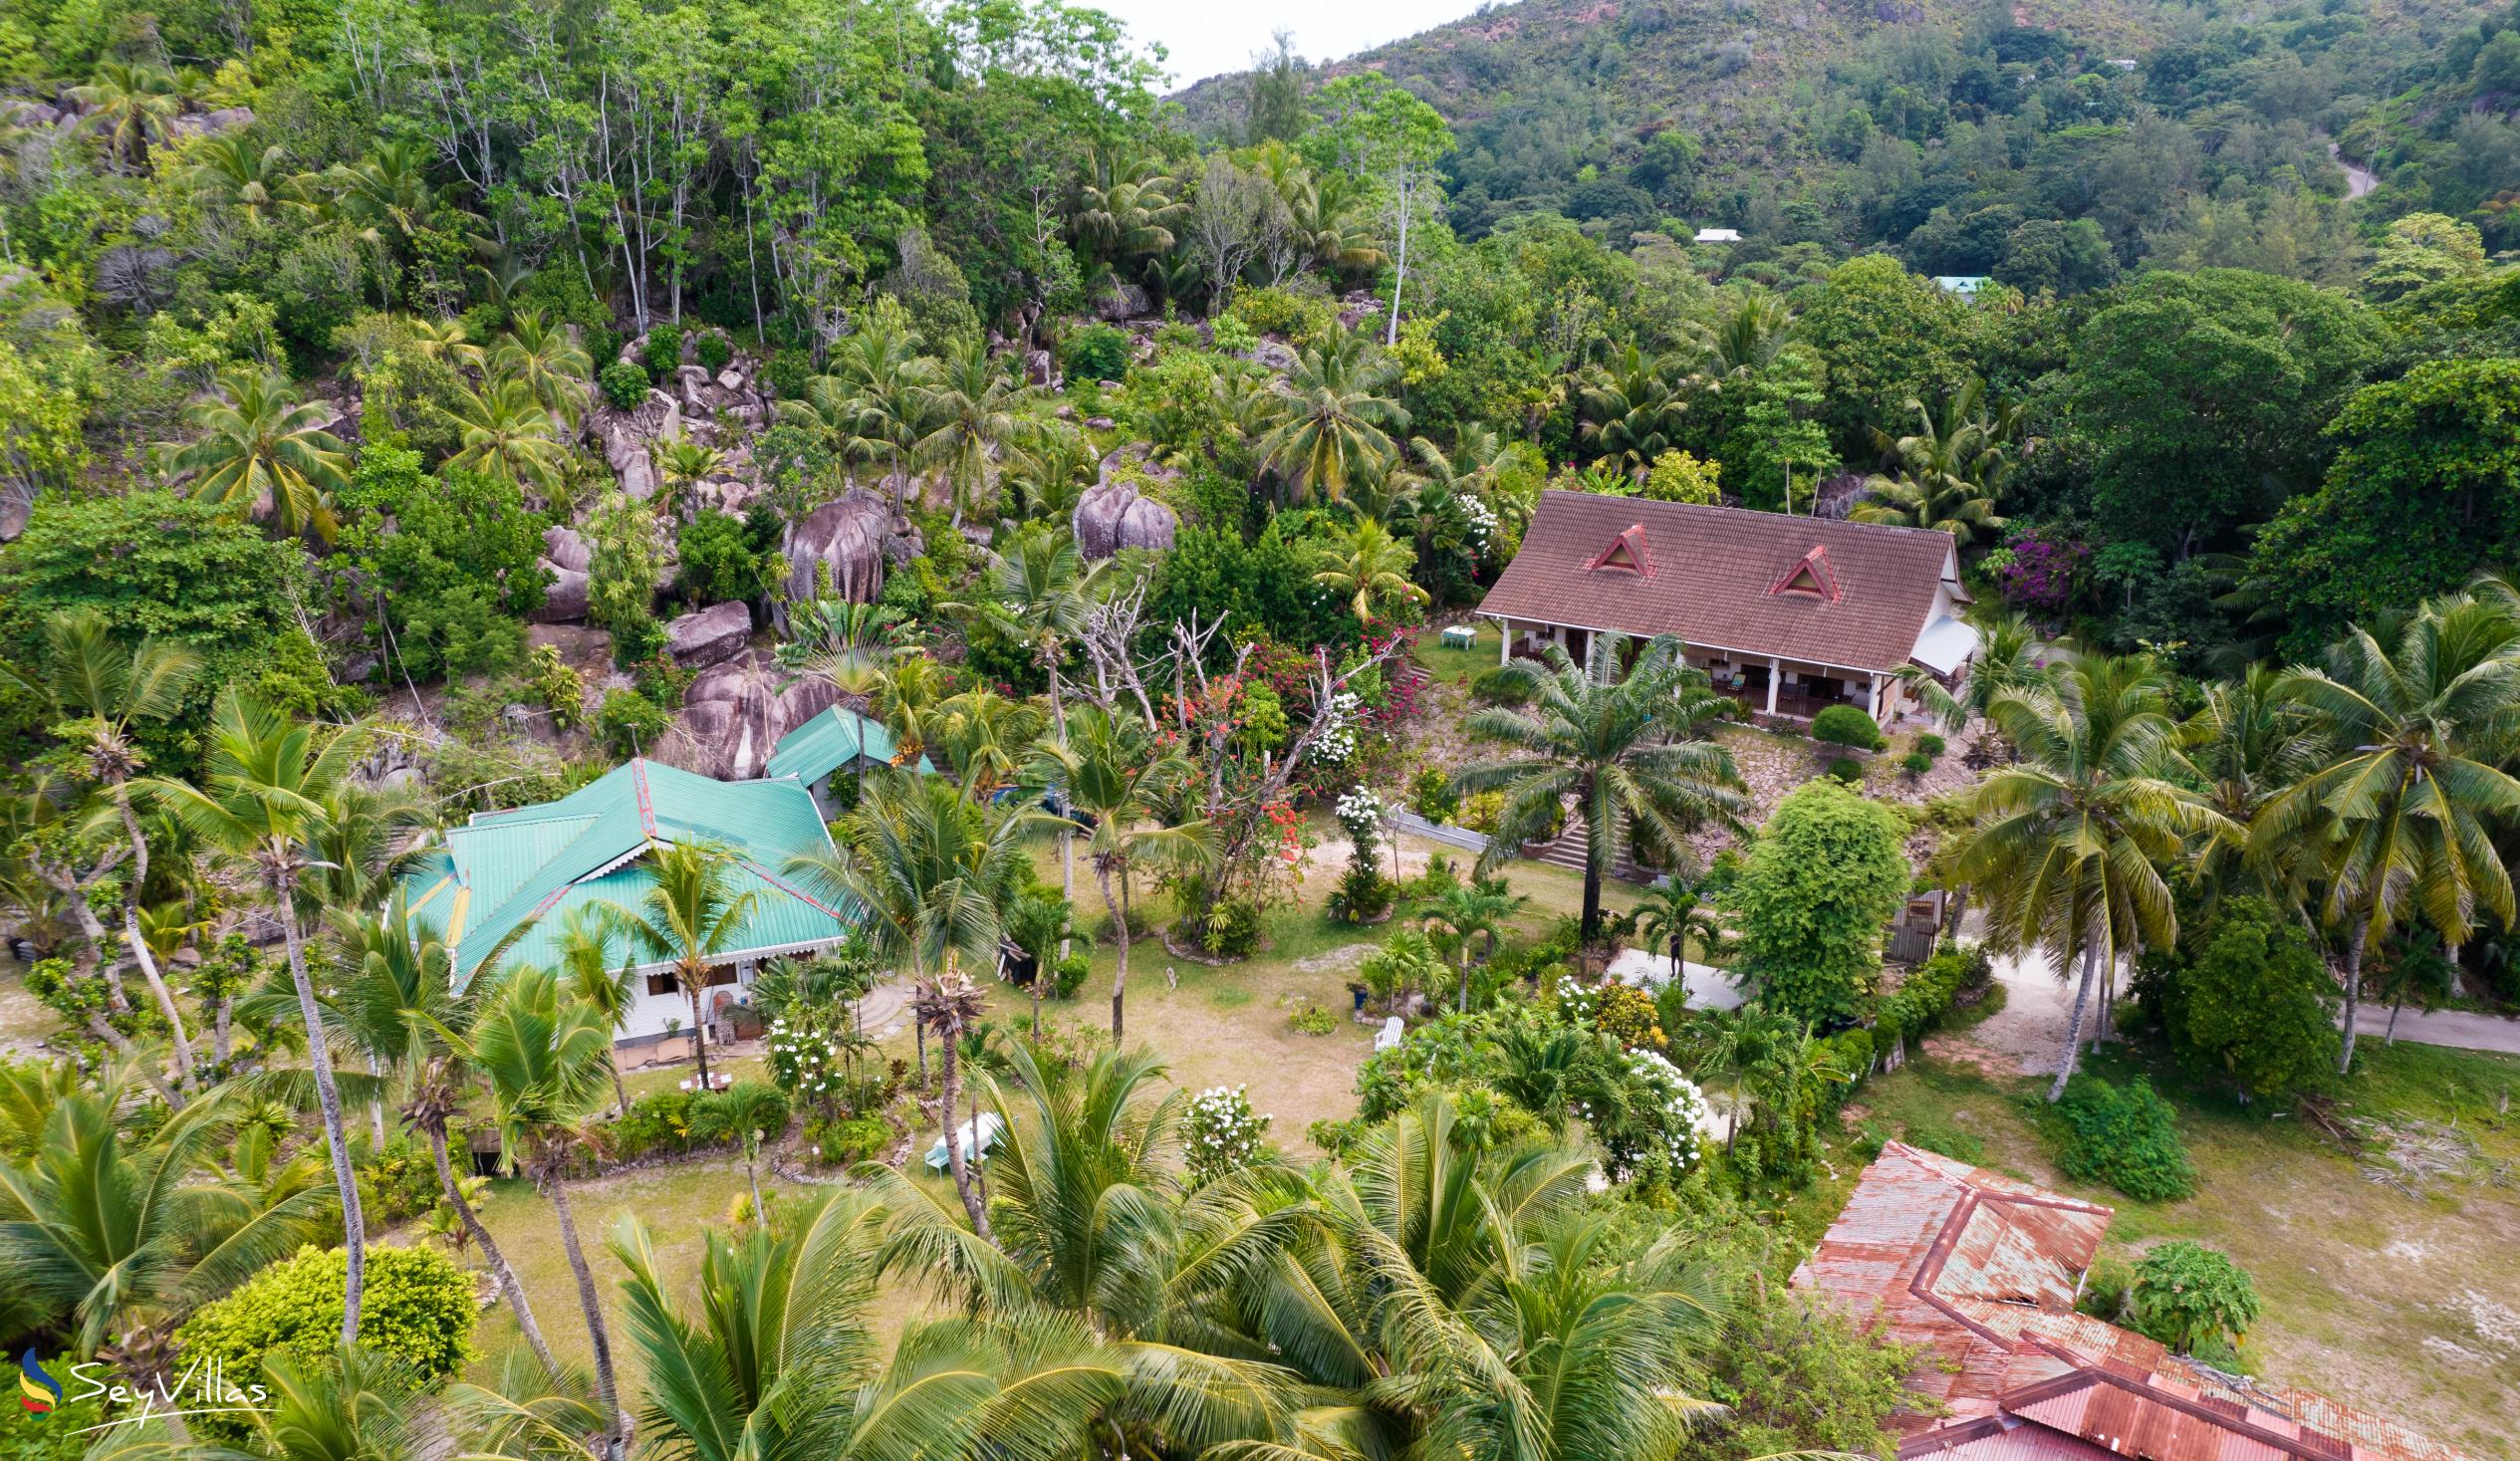 Foto 6: Villas du Voyageur - Aussenbereich - Praslin (Seychellen)